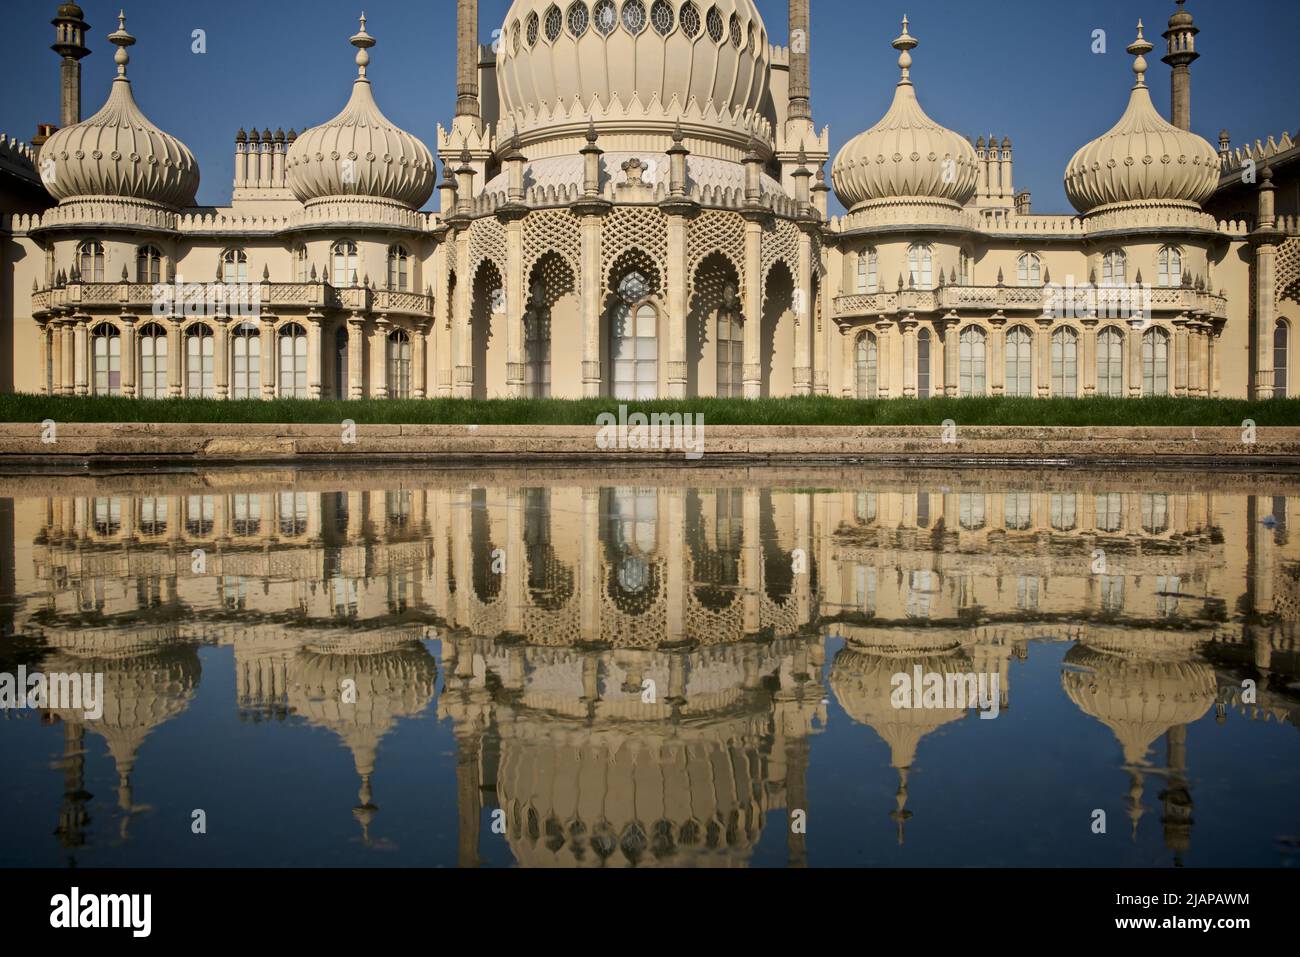 Pavillon royal de Brighton, Brighton. Brighton, East Sussex, Angleterre, Royaume-Uni. Reflet du Pavillon royal dans l'étang. Indo-Saracenic Revival. Banque D'Images